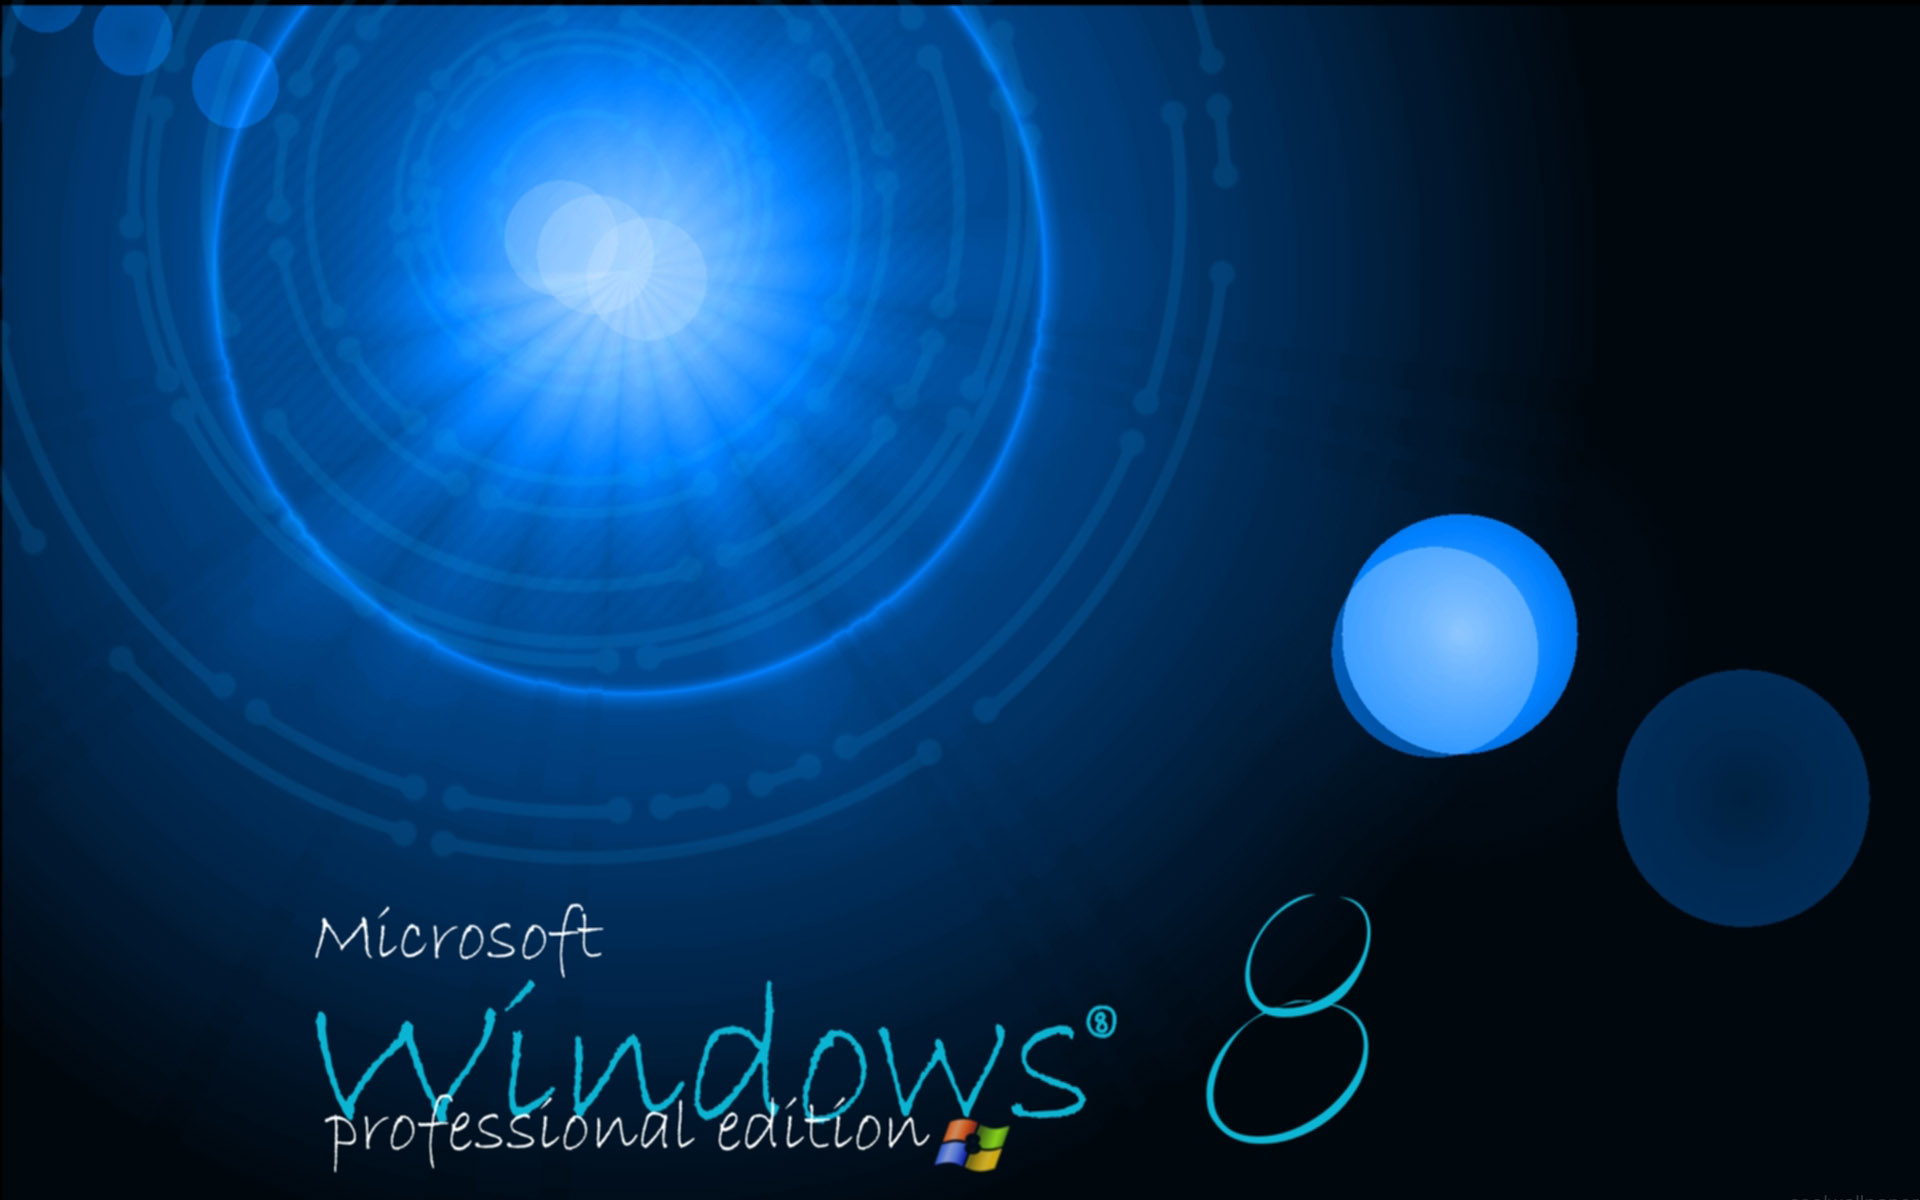 windows 8 wallpaper hd download ImageBankbiz 1920x1200